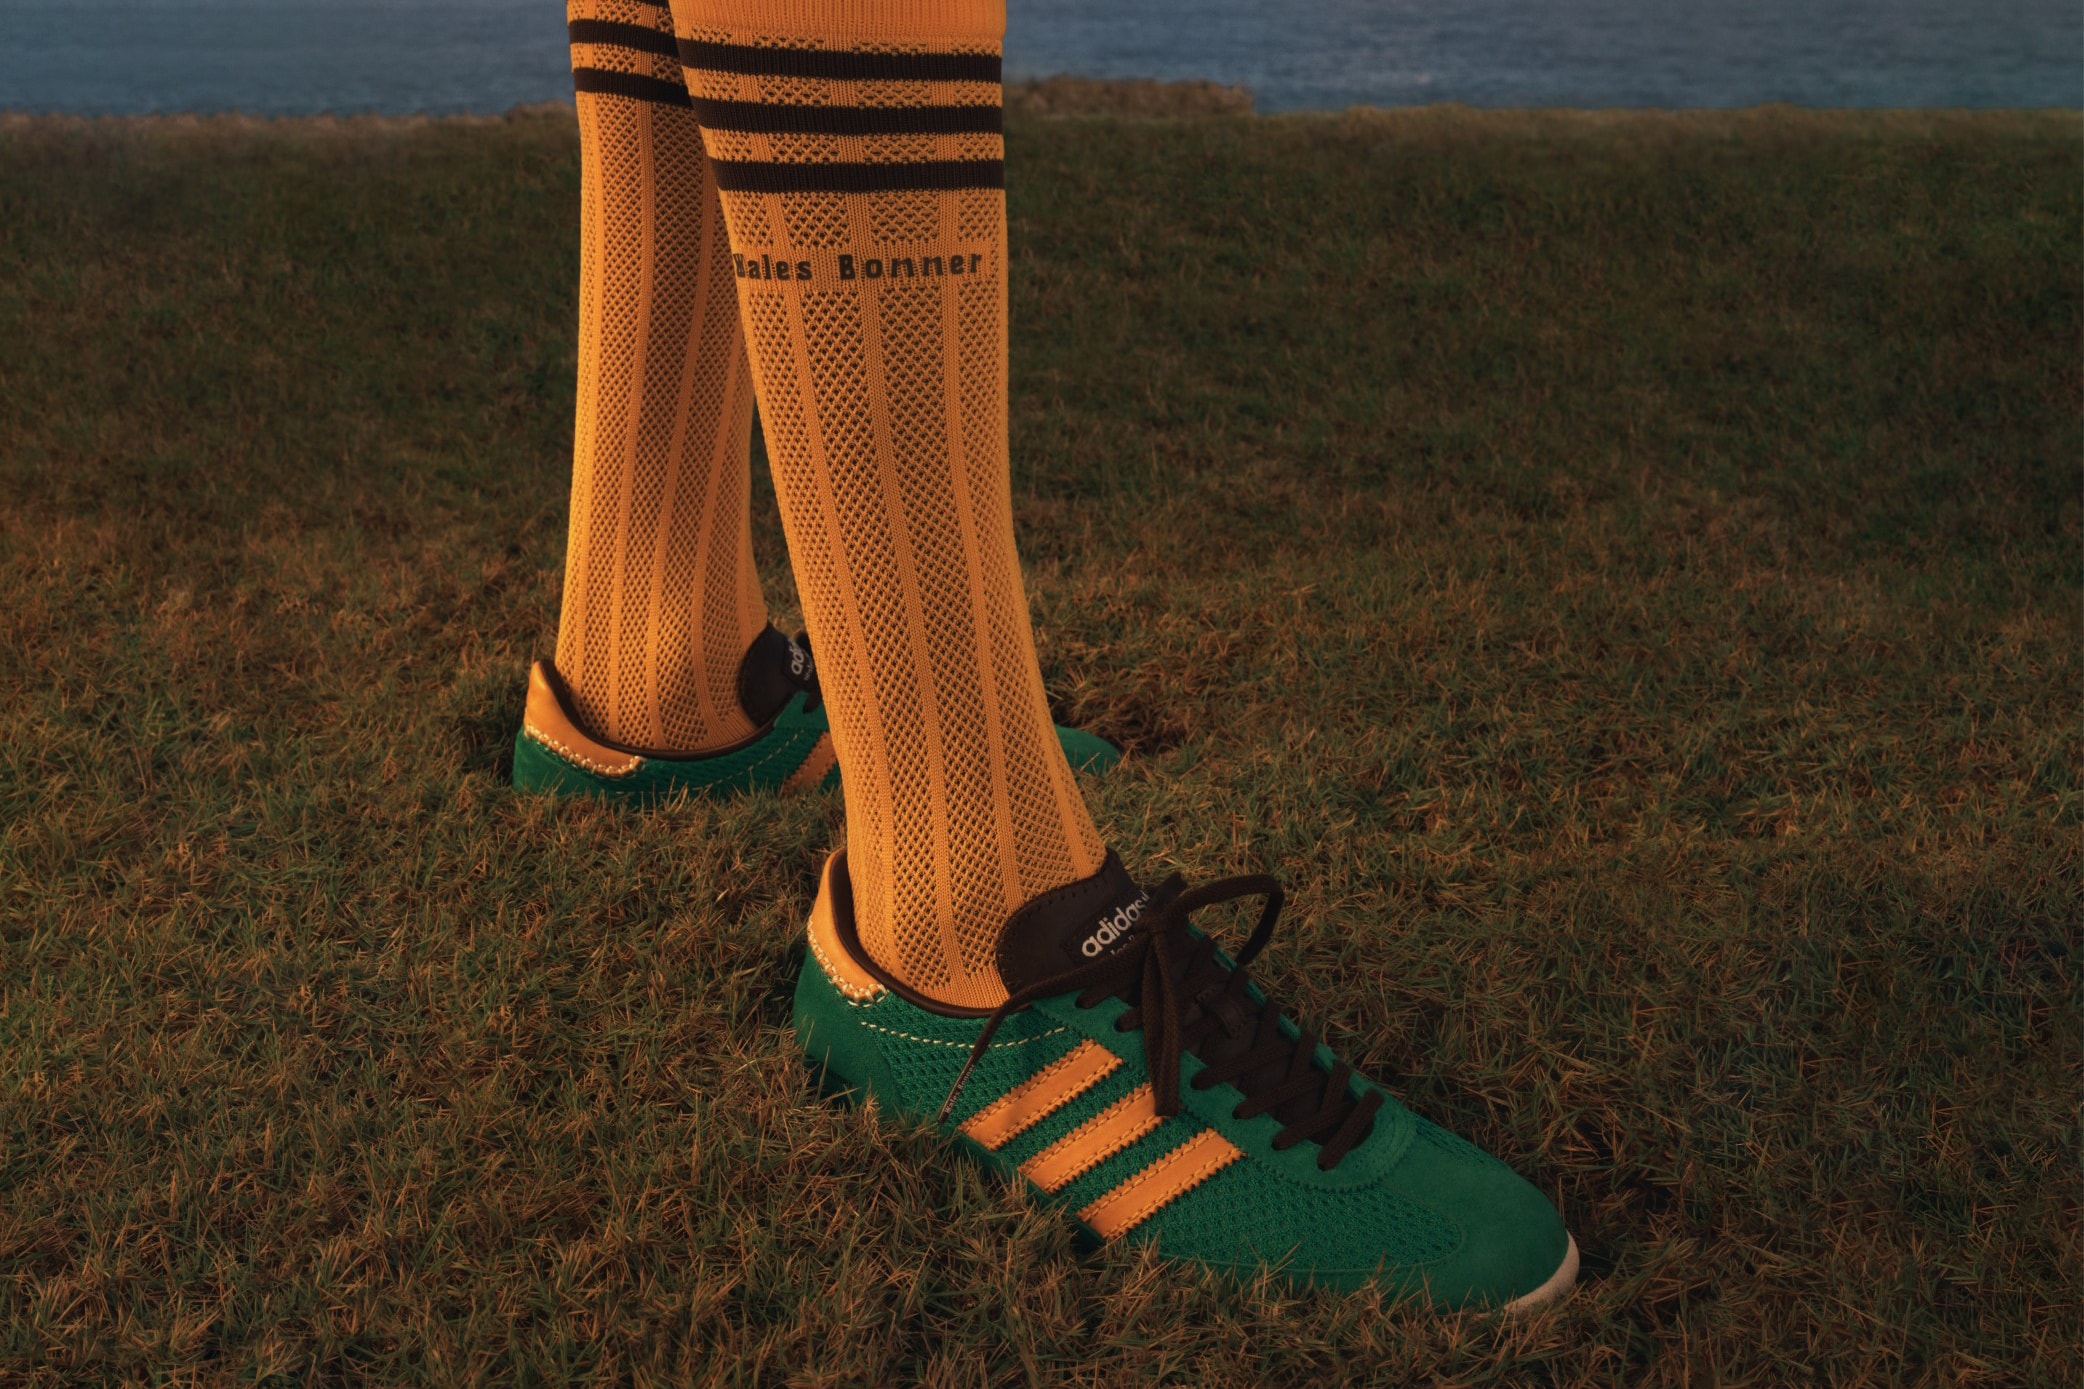 adidas Originals x Wales Bonner  全新 2023 春夏系列正式发布